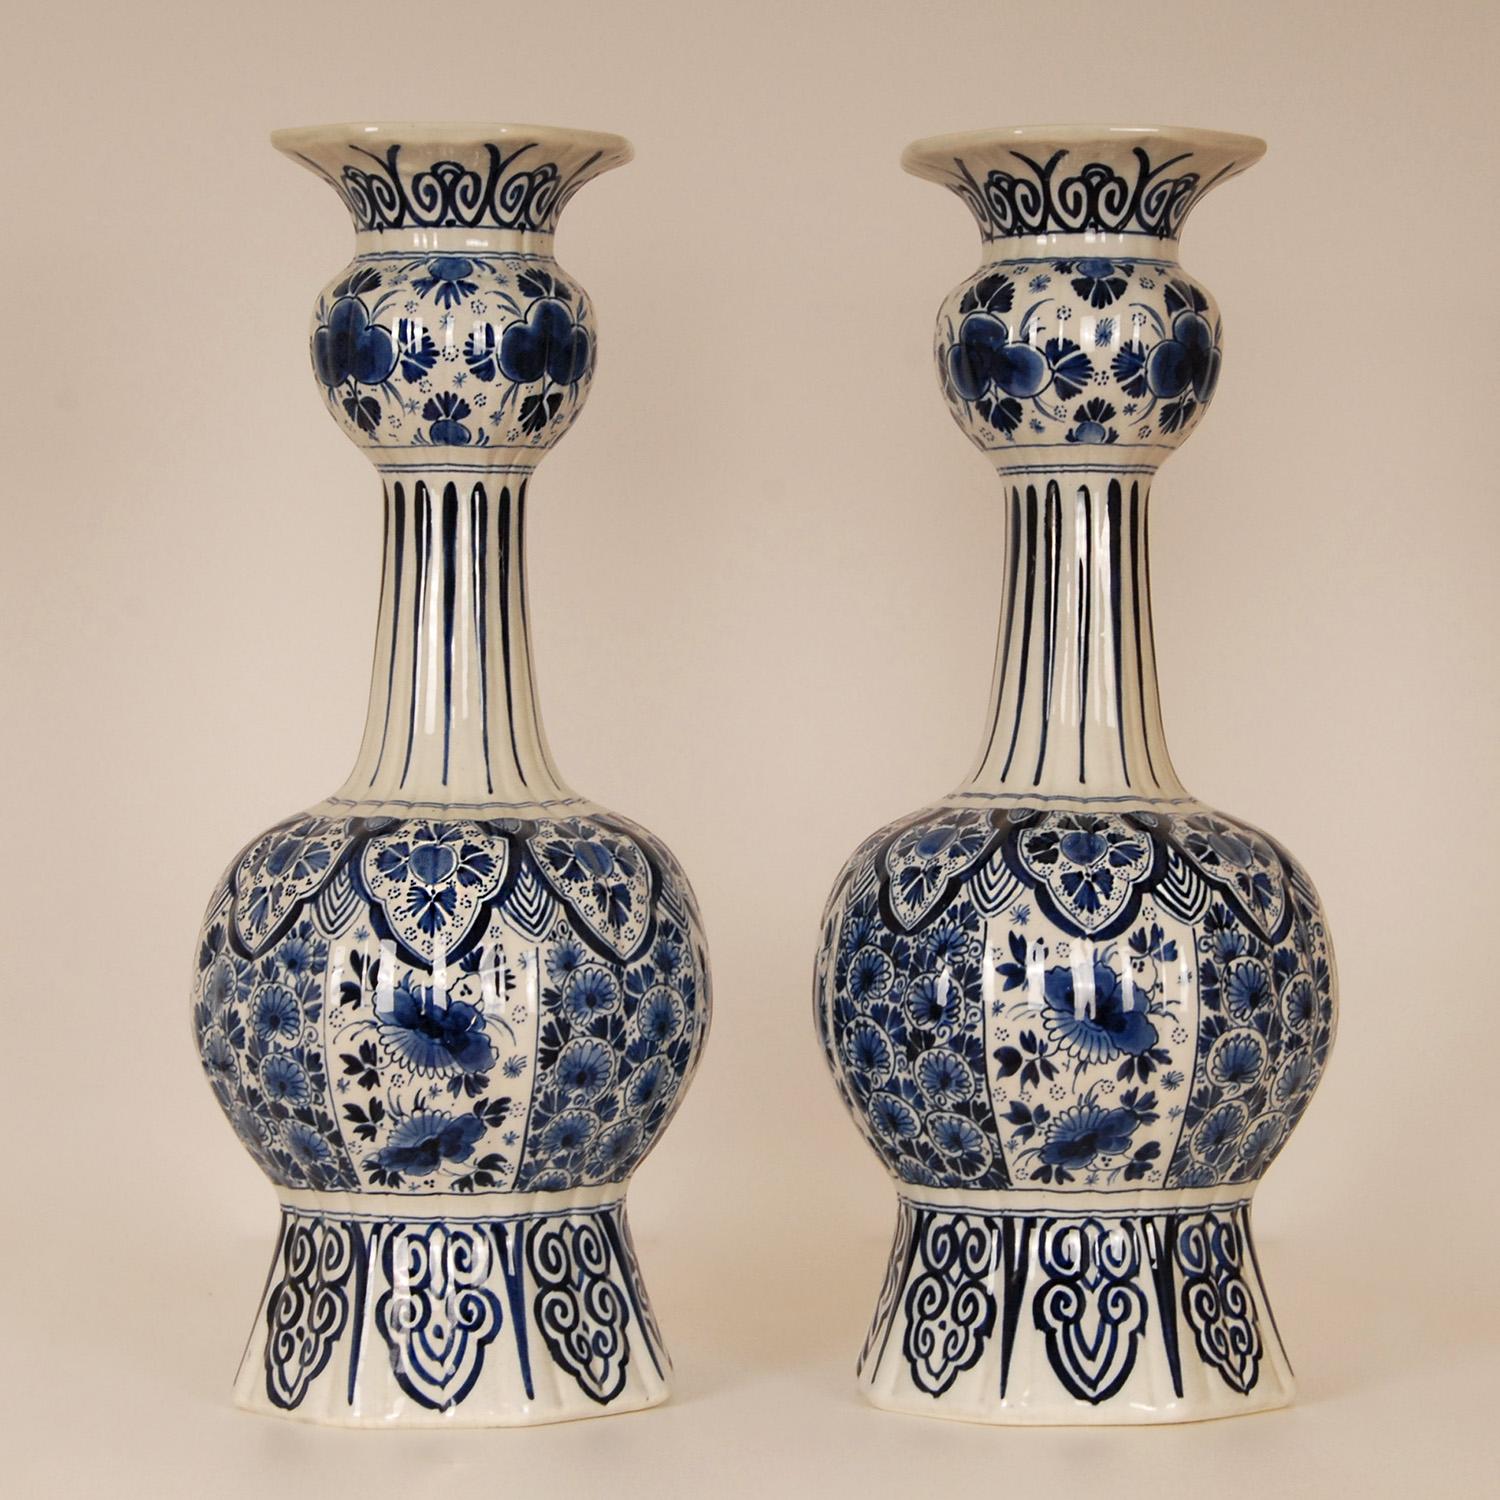 Ein Paar niederländische Royal Delft Vasen.
Hohe dekorative Vasen auf einem achteckigen Fuß.
Die Vasen sind handgefertigt und handbemalt in bezaubernden blauen Farben, blau camaieu.
Blumendekoration mit Pfauenvögeln
Herkunft Die Niederlande, Delft